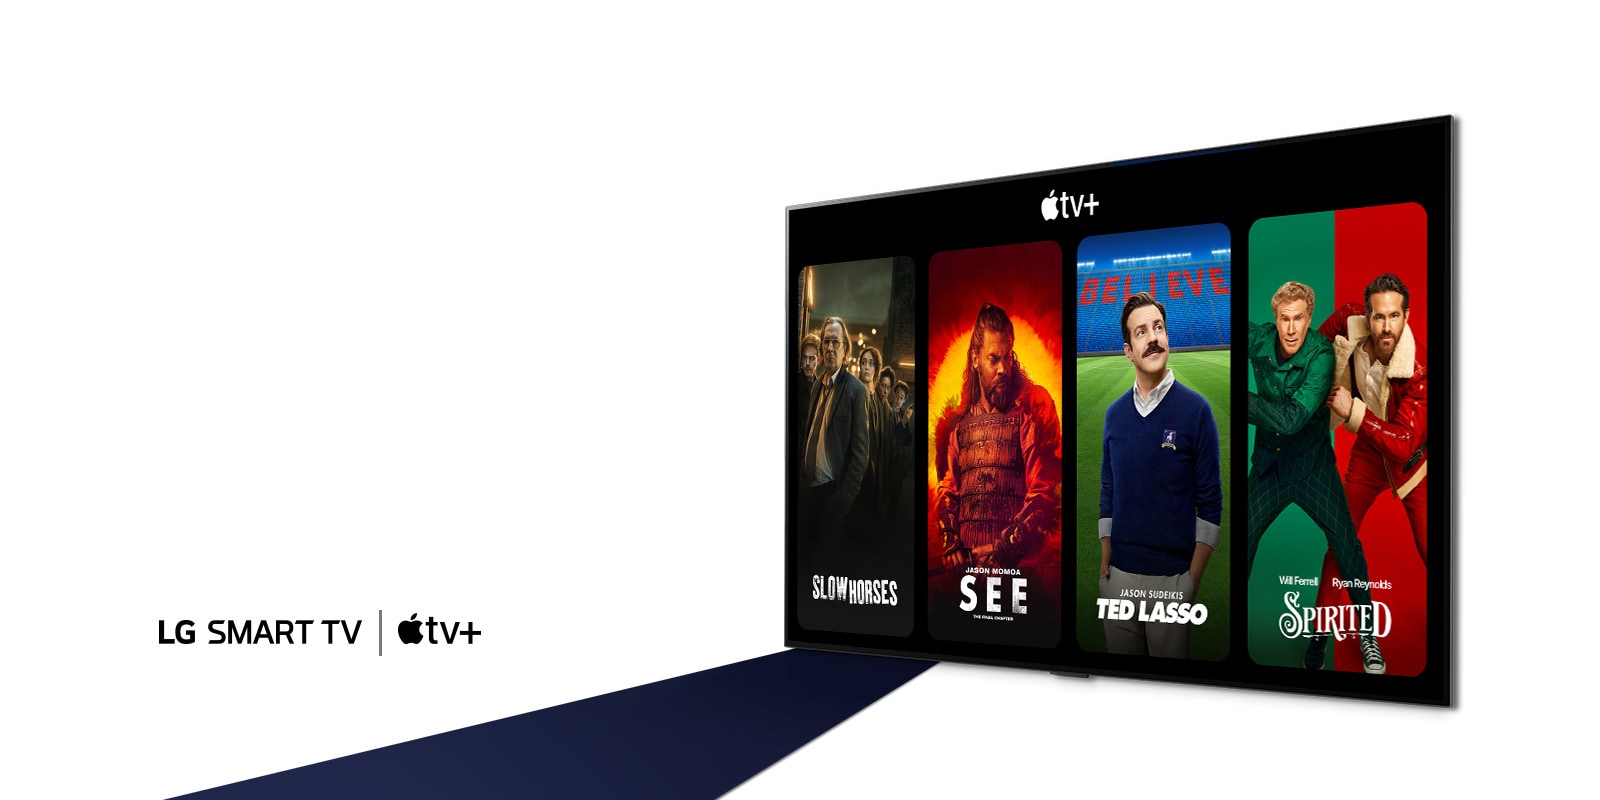 صورة لجهاز تلفزيون LG بتقنية OLED. تعرض الشاشة محتوى‎‎ ‏‎Apple TV+‎ تحت عنوان ‏"احصل على اشتراك ‏‎Apple TV+‎ مجانًا لمدة 3 أشهر مع أجهزة تلفزيون LG الذكية".